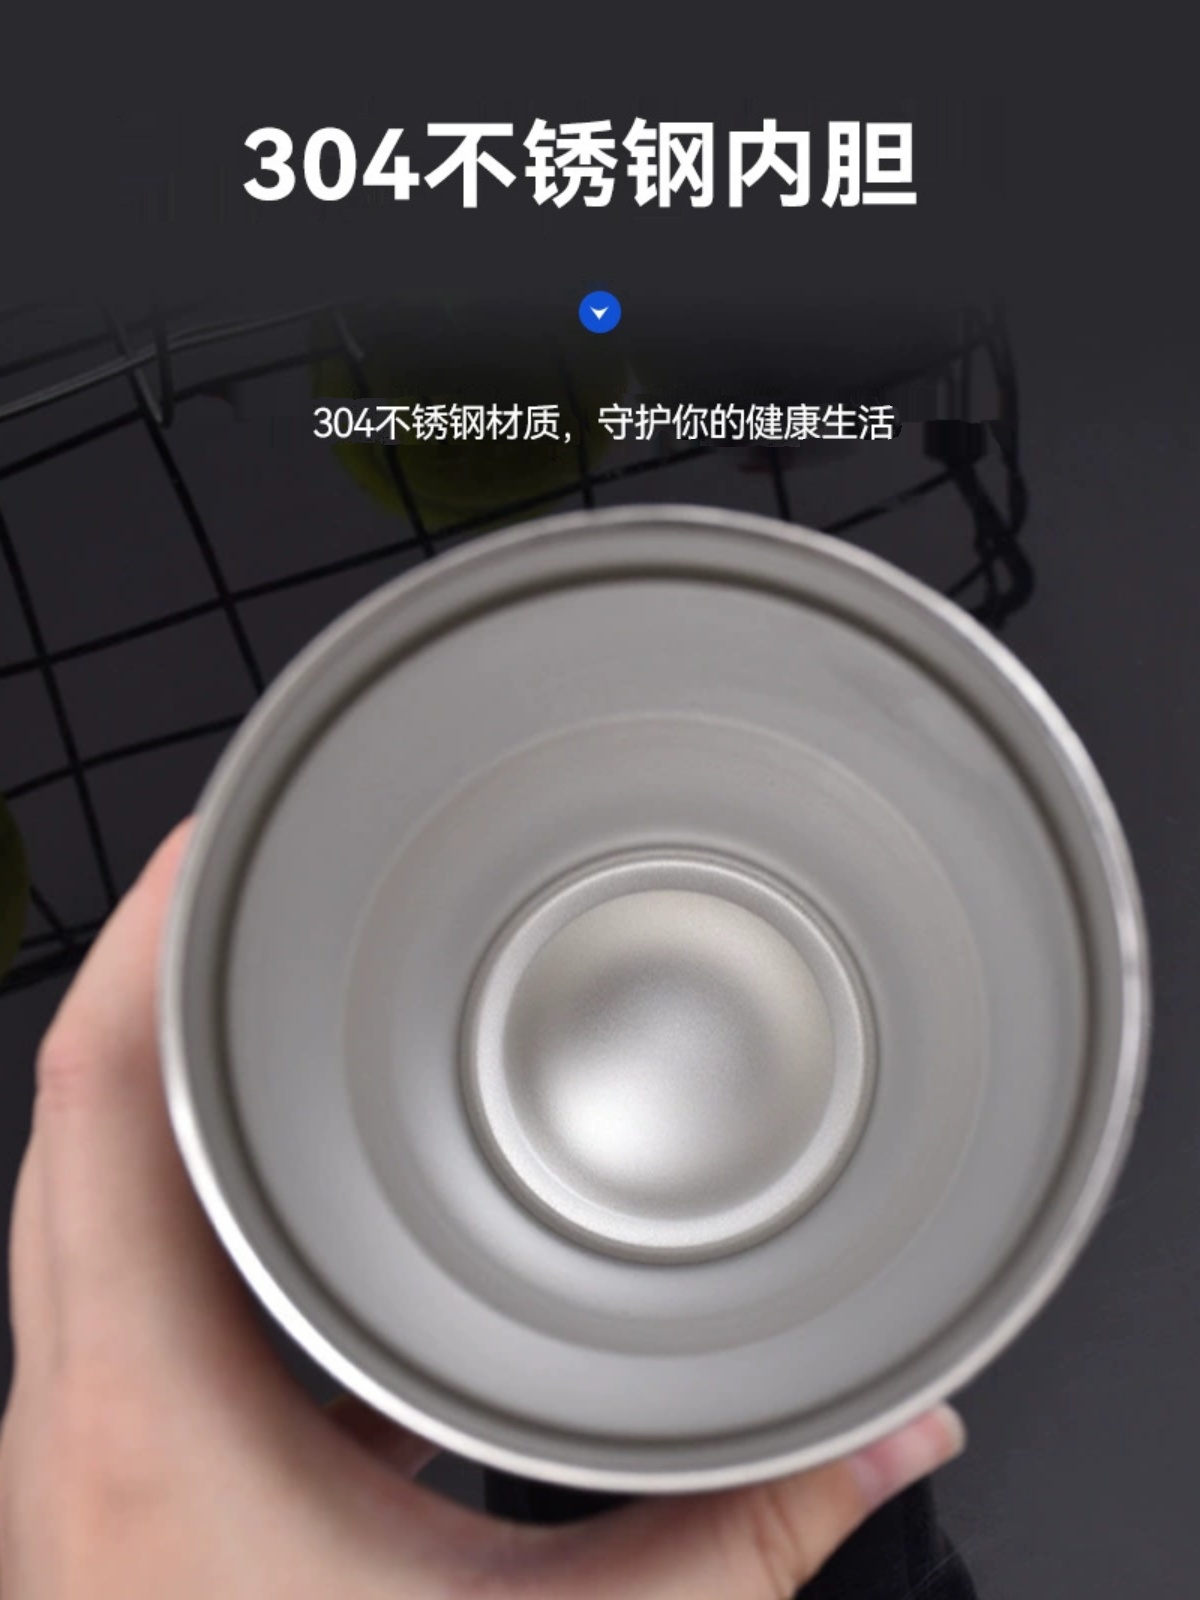 網紅簡約不鏽鋼21L保溫保冷寬口啤酒杯 (8.3折)